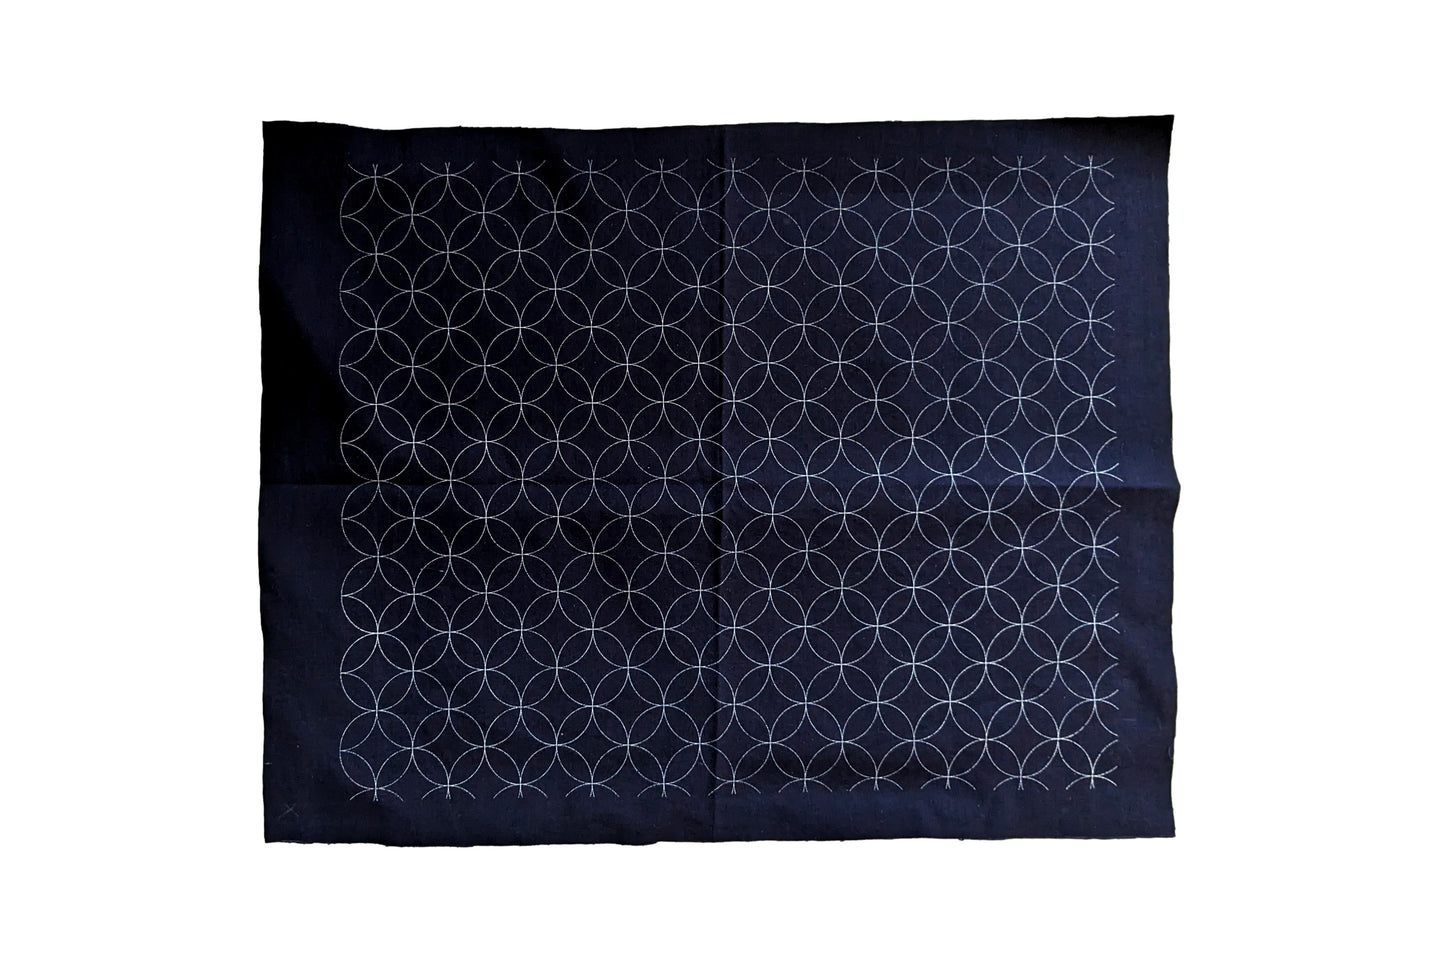 Pattern Printed Sashiko Fabric (22)